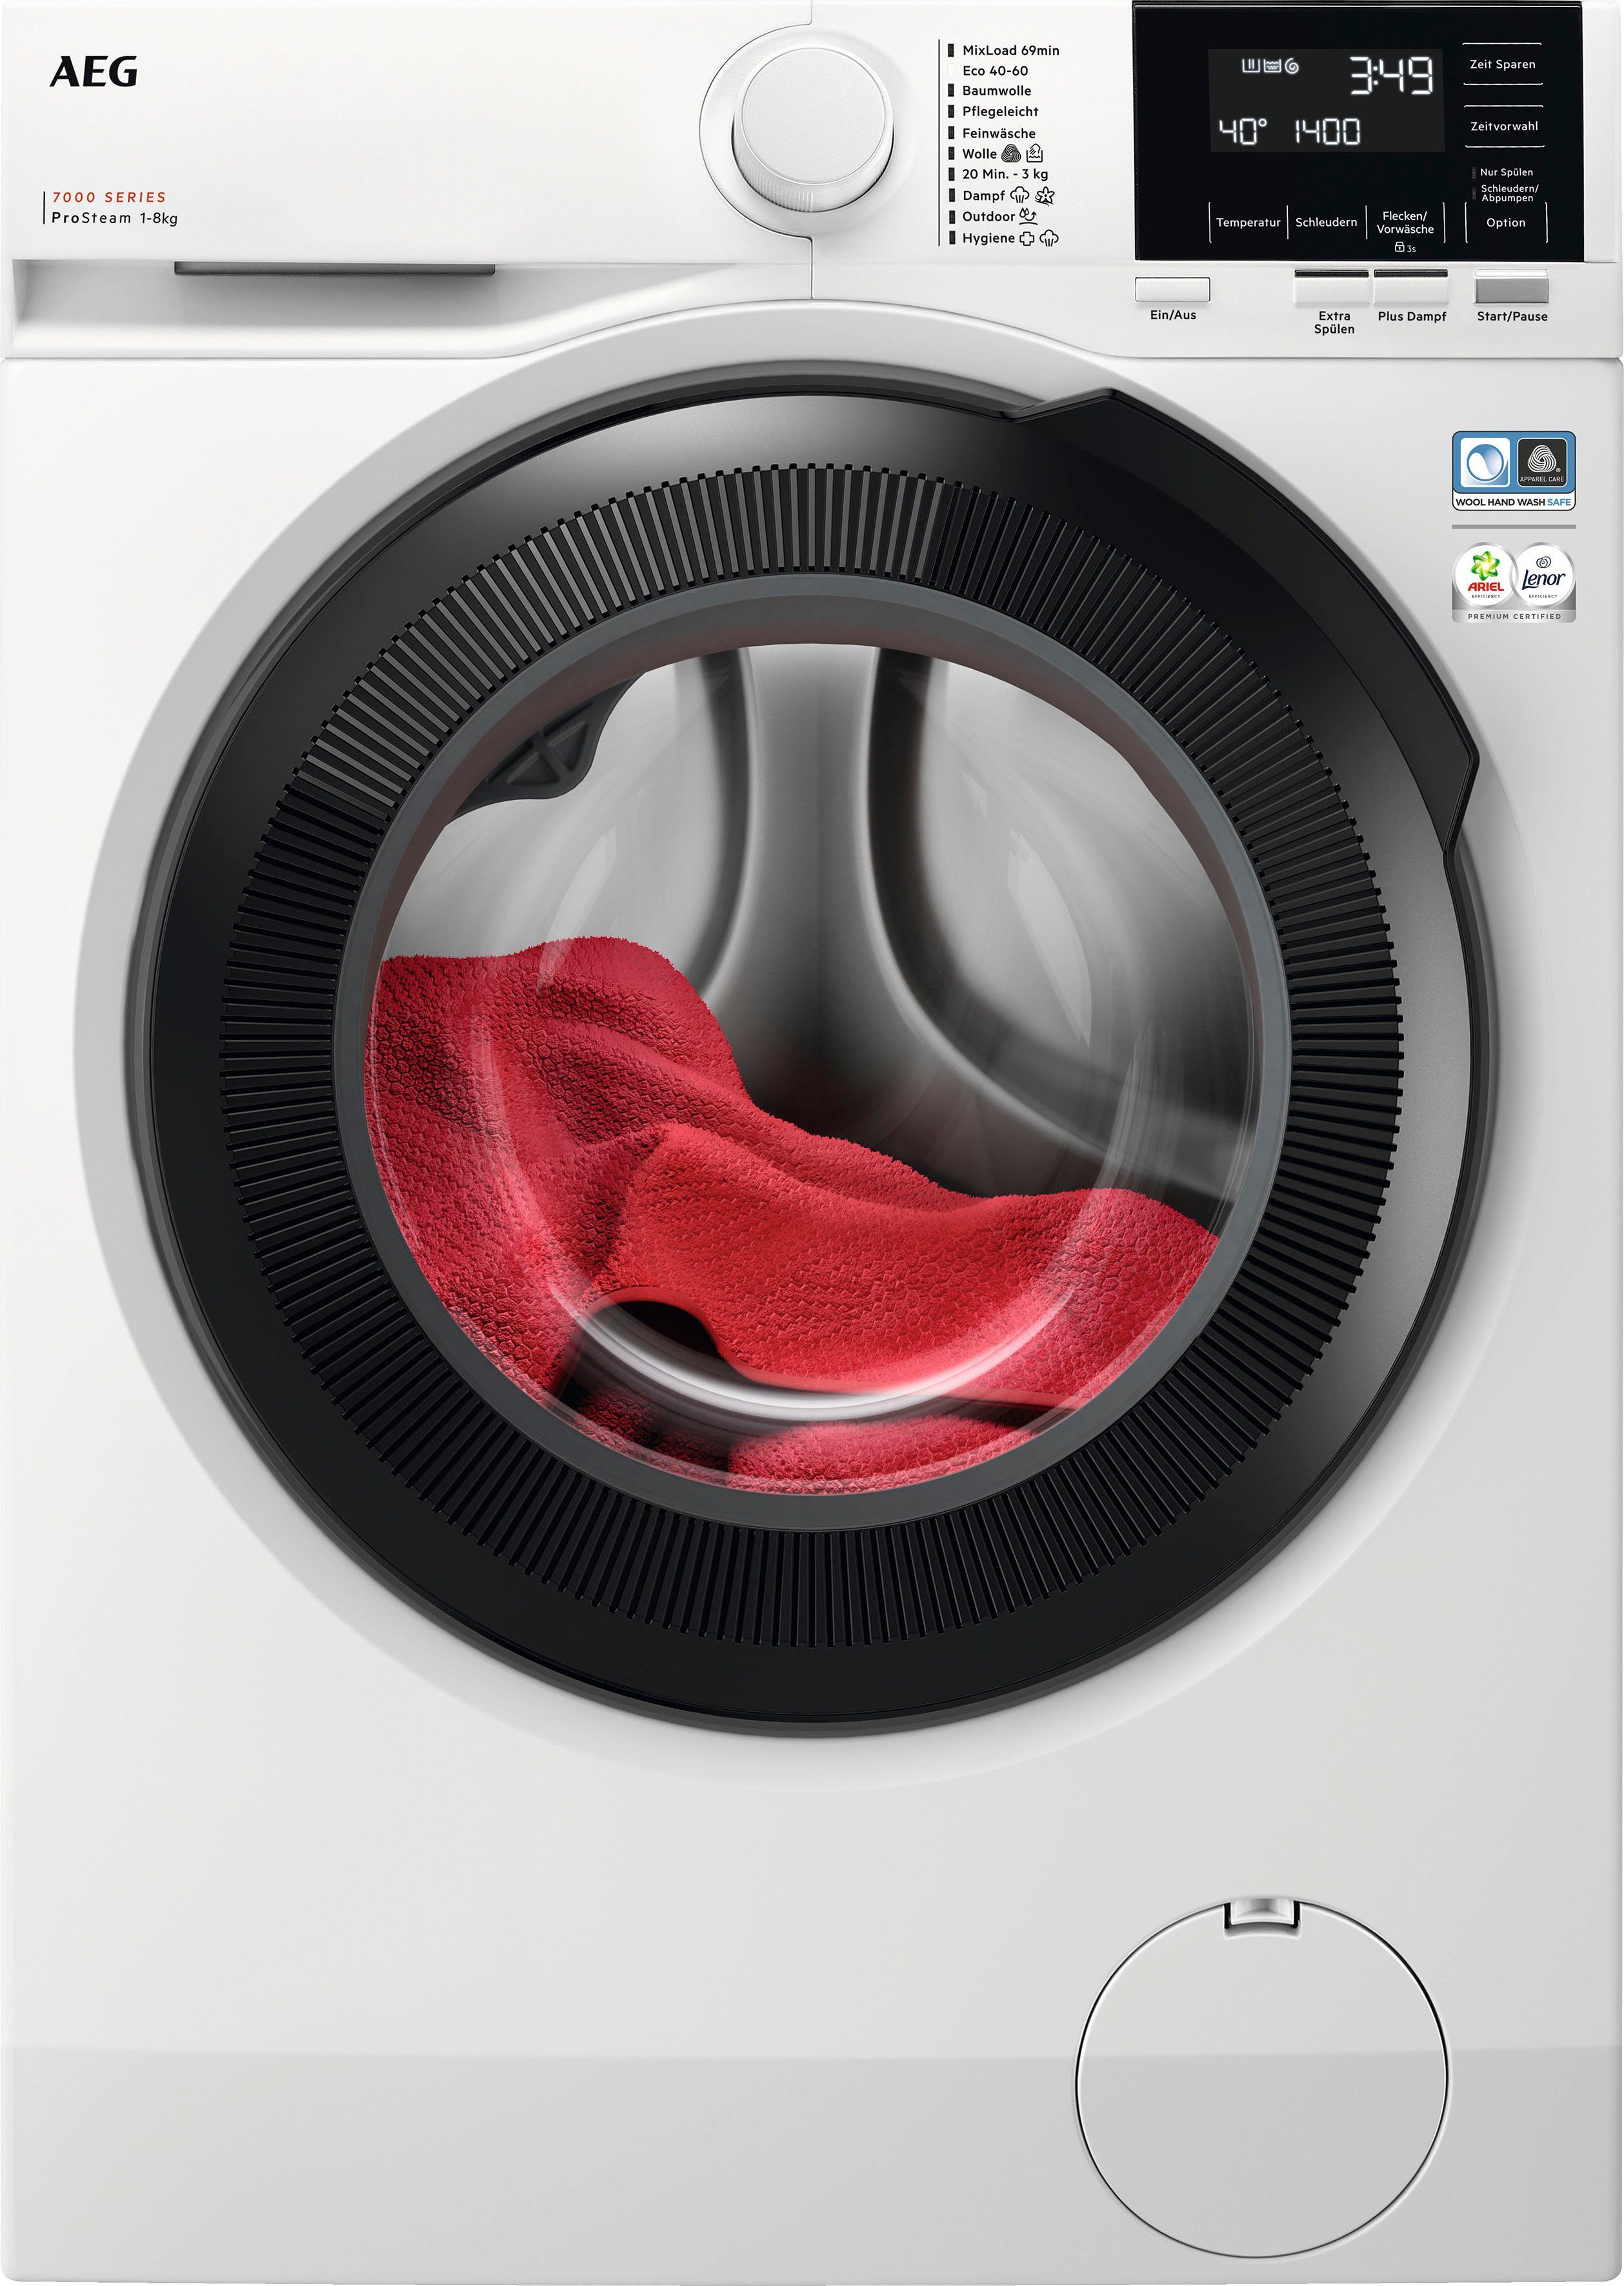 AEG Waschmaschine 7000 LR7G60480, Wasserverbrauch % U/min, kg, Dampf-Programm weniger 96 ProSteam 8 für 1400 